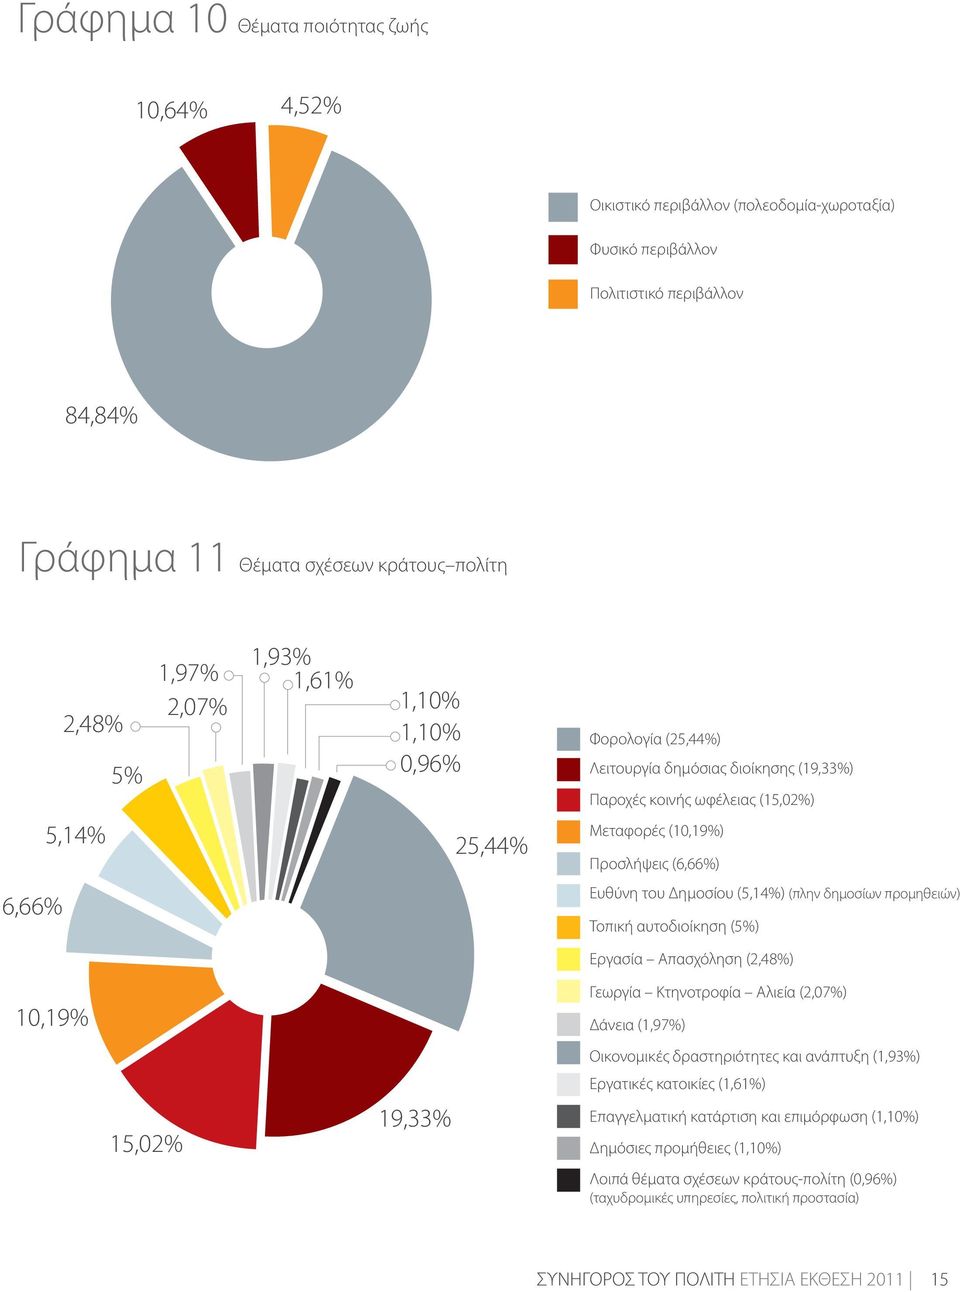 (5,14%) (πλην δημοσίων προμηθειών) Τοπική αυτοδιοίκηση (5%) Εργασία Απασχόληση (2,48%) 10,19% Γεωργία Κτηνοτροφία Αλιεία (2,07%) Δάνεια (1,97%) Οικονομικές δραστηριότητες και ανάπτυξη (1,93%)